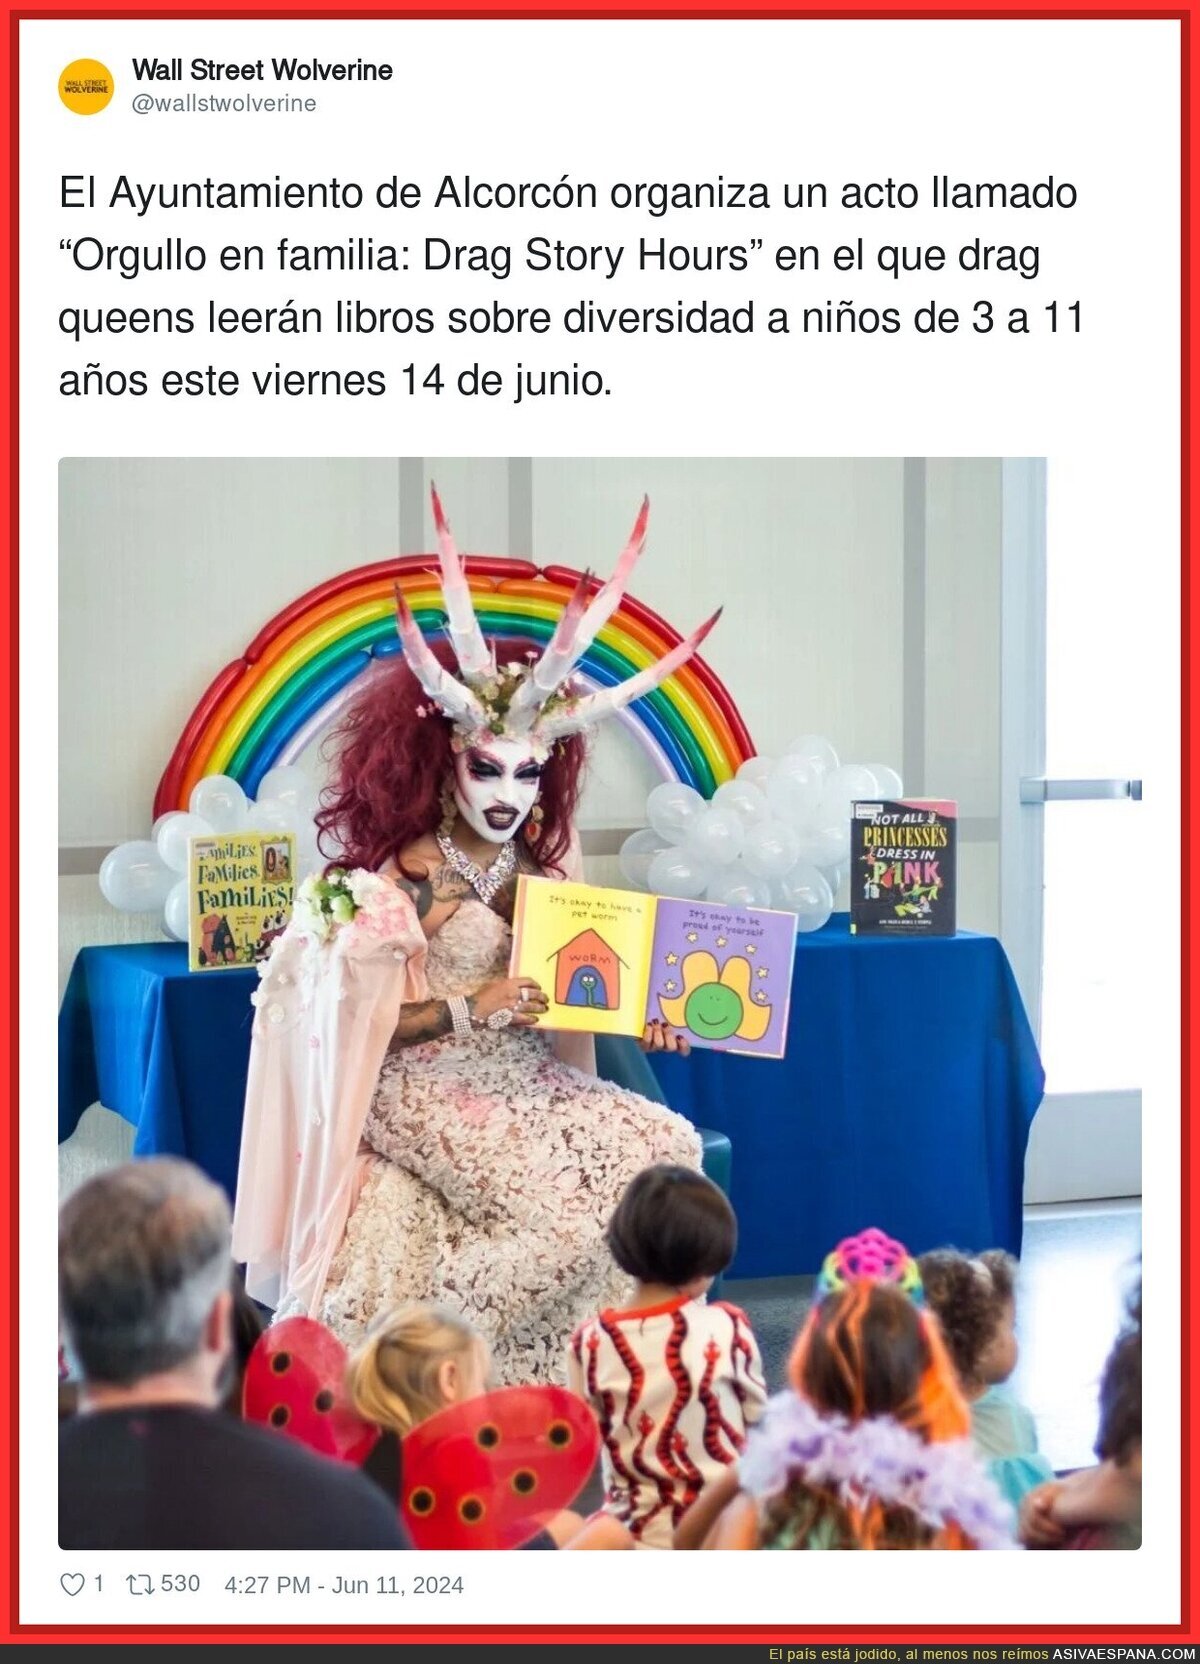 El Ayuntamiento de Alcorcón y el acto “Orgullo en familia: Drag Story Hours para niños de 3 a 11 años